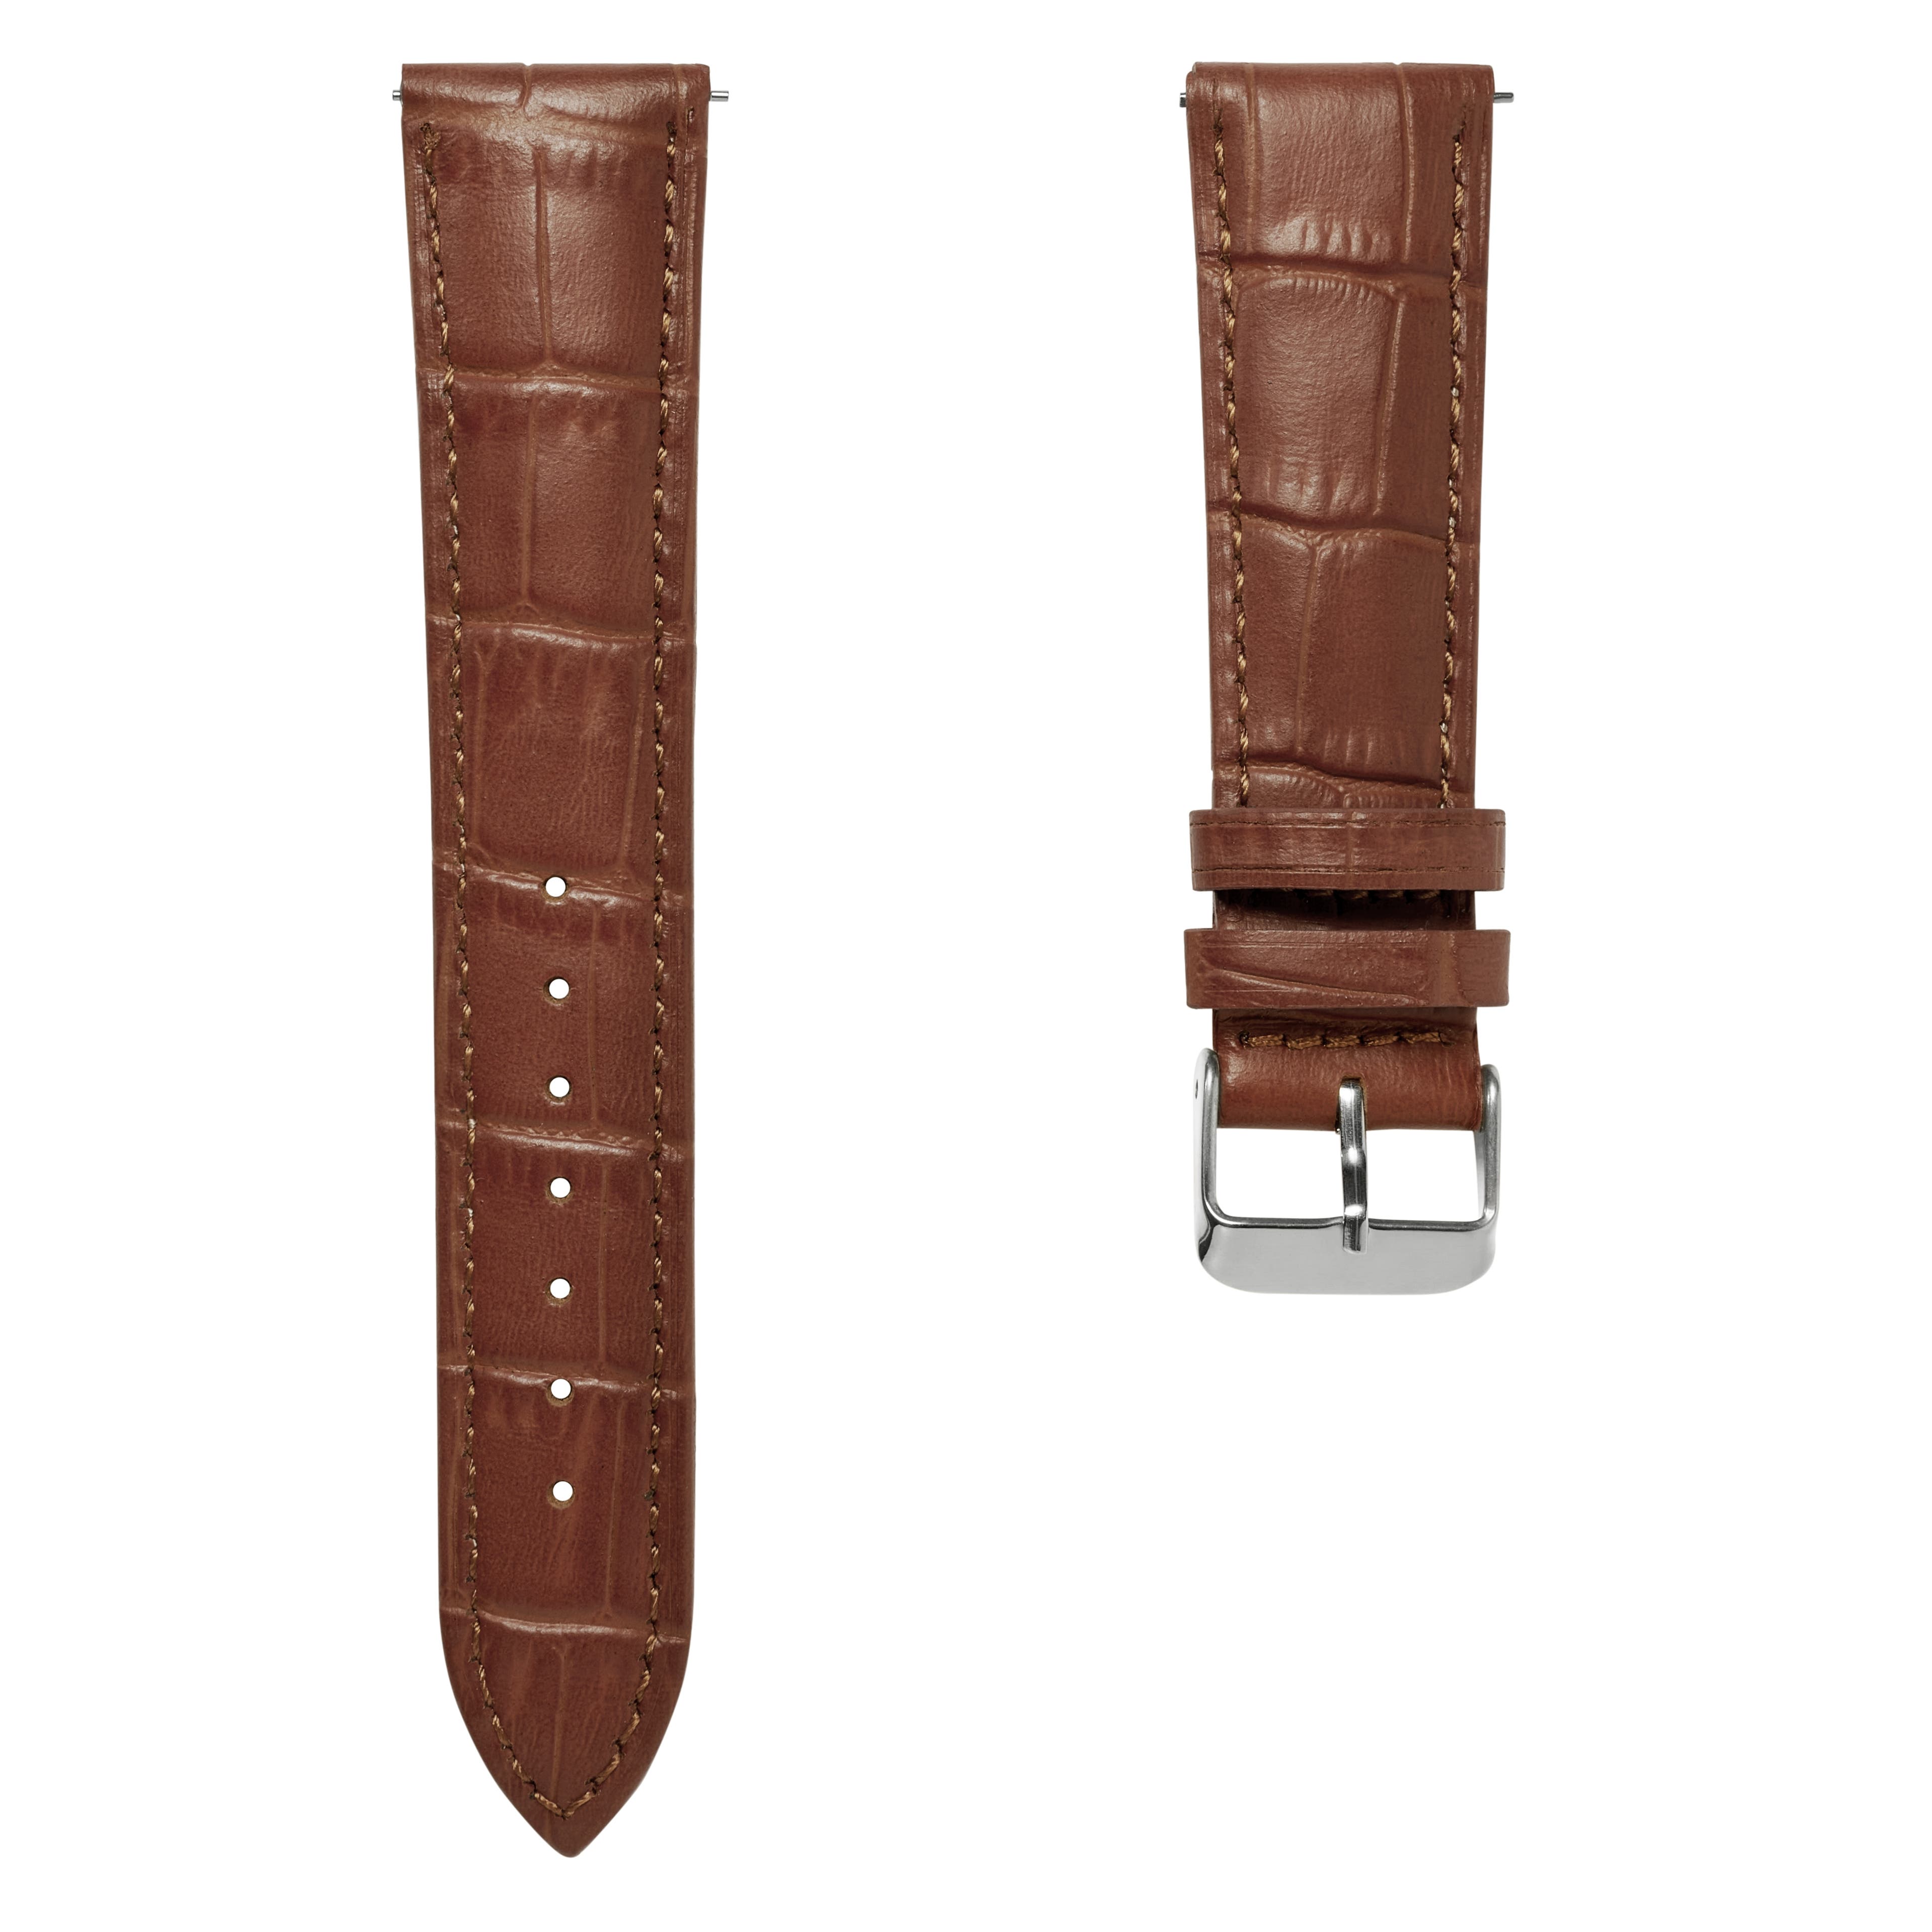 Bracelet de montre en cuir brun havane gaufré à motif crocodile 24 mm avec boucle argentée - Attache rapide